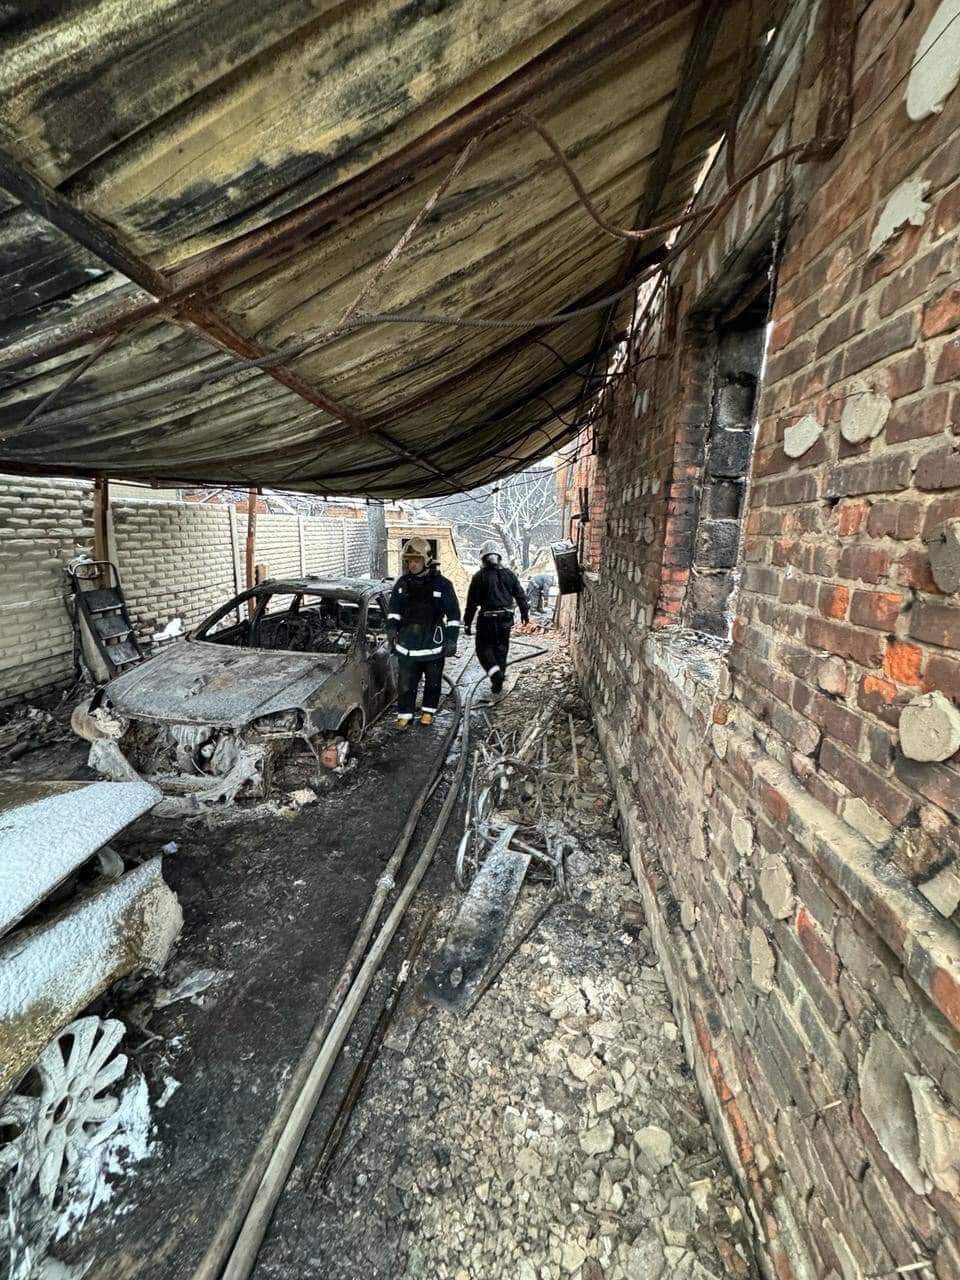 Харьков: в одном из домов сгорела целая семья – супруги и трое детей